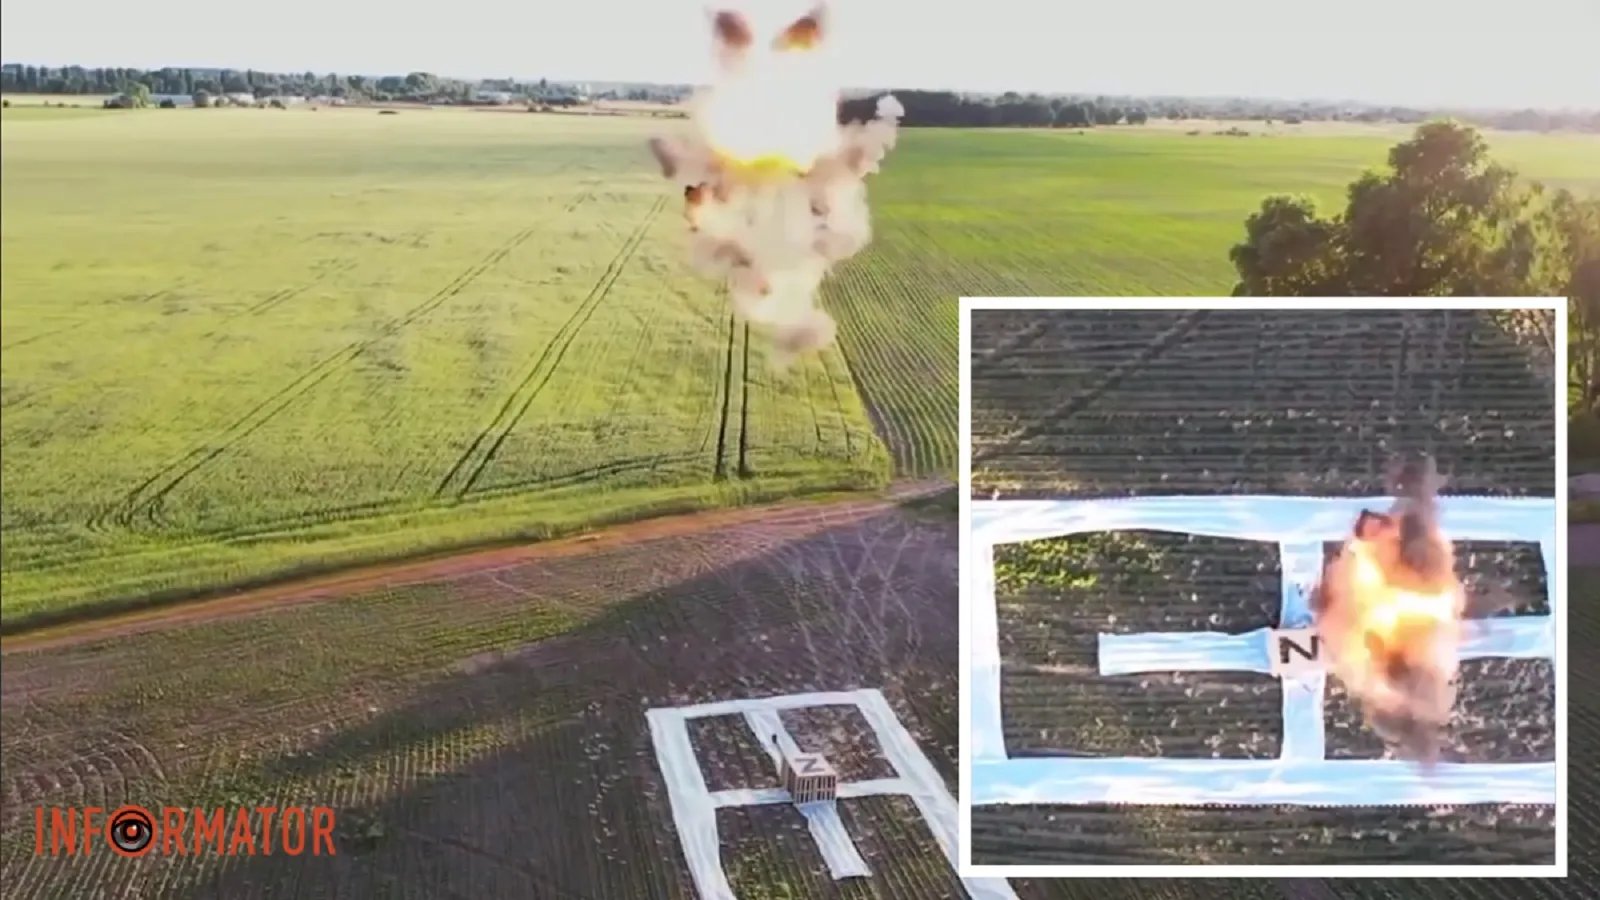 Винахід СБУ: з'явилися кадри випробування картонних дронів, якими були уражені ворожі літаки на аеродромі в Курську - відео